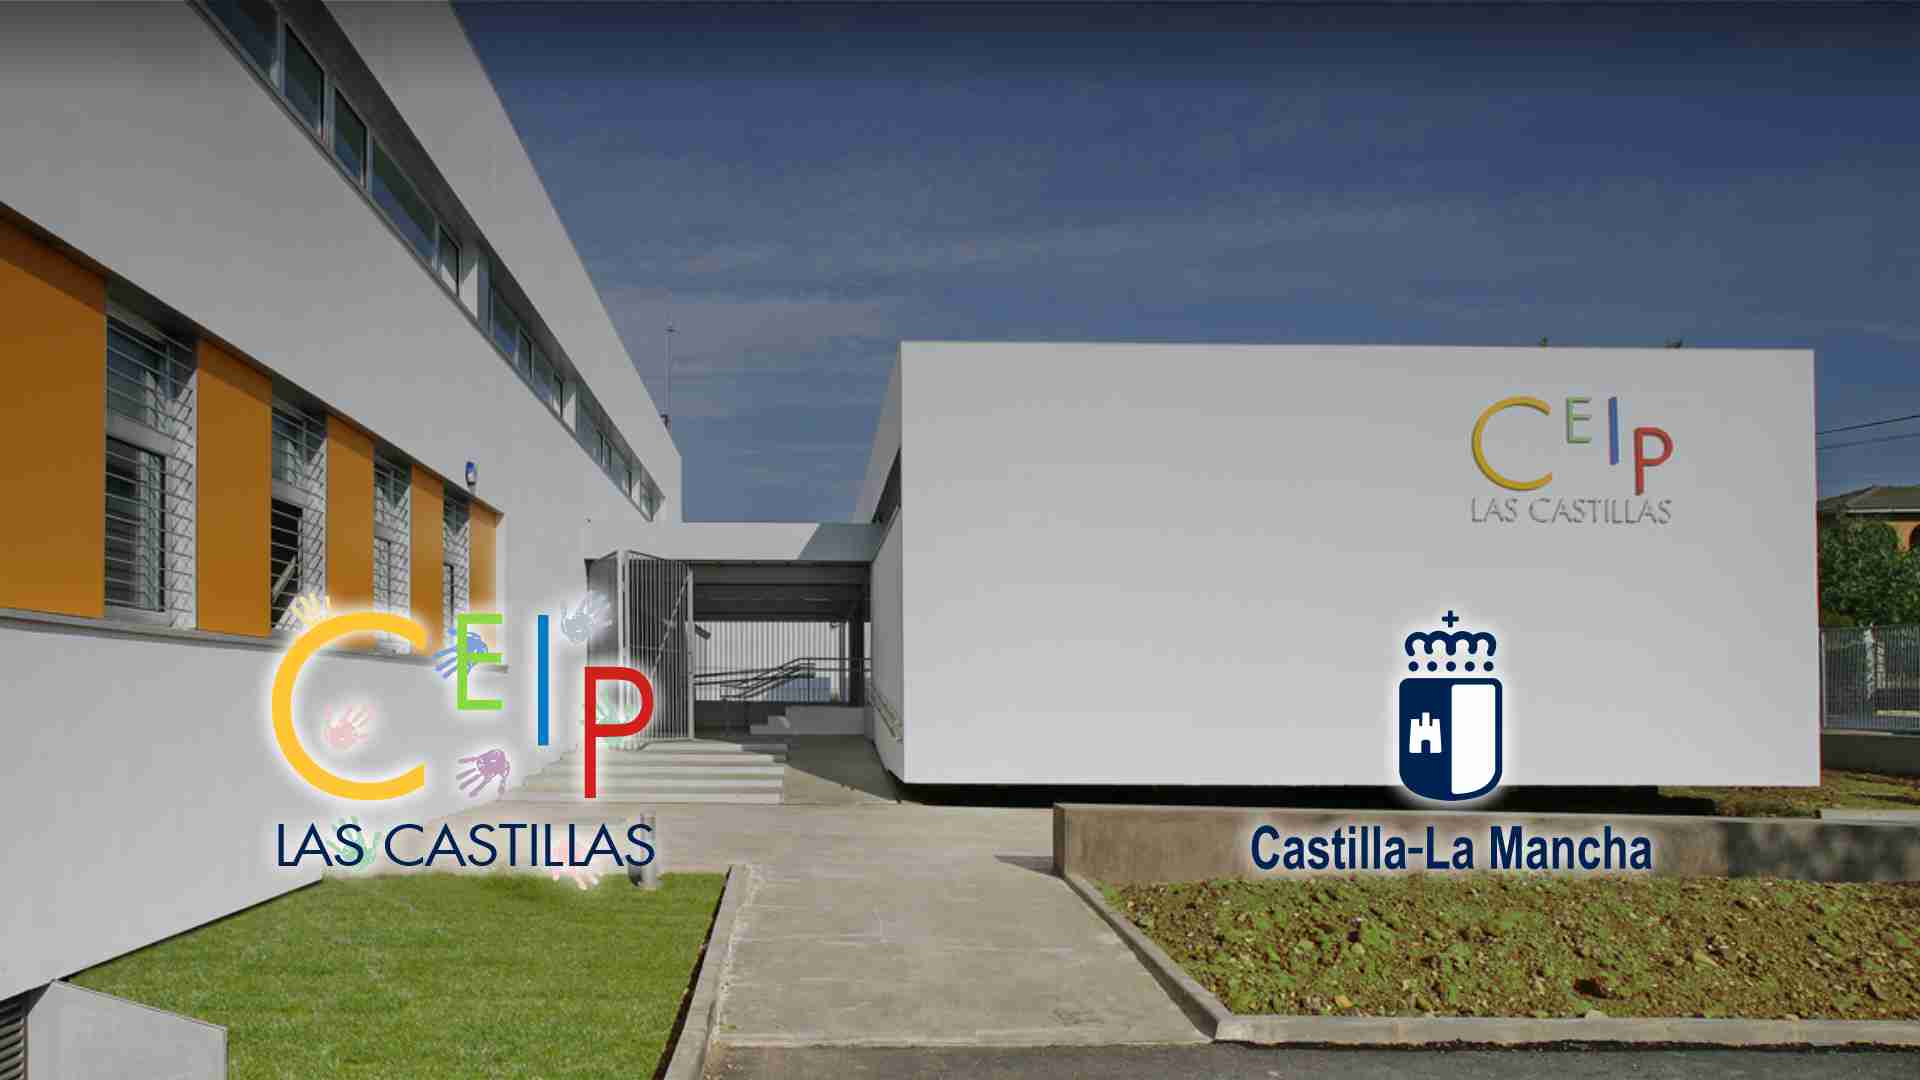 CEIP Las Castillas